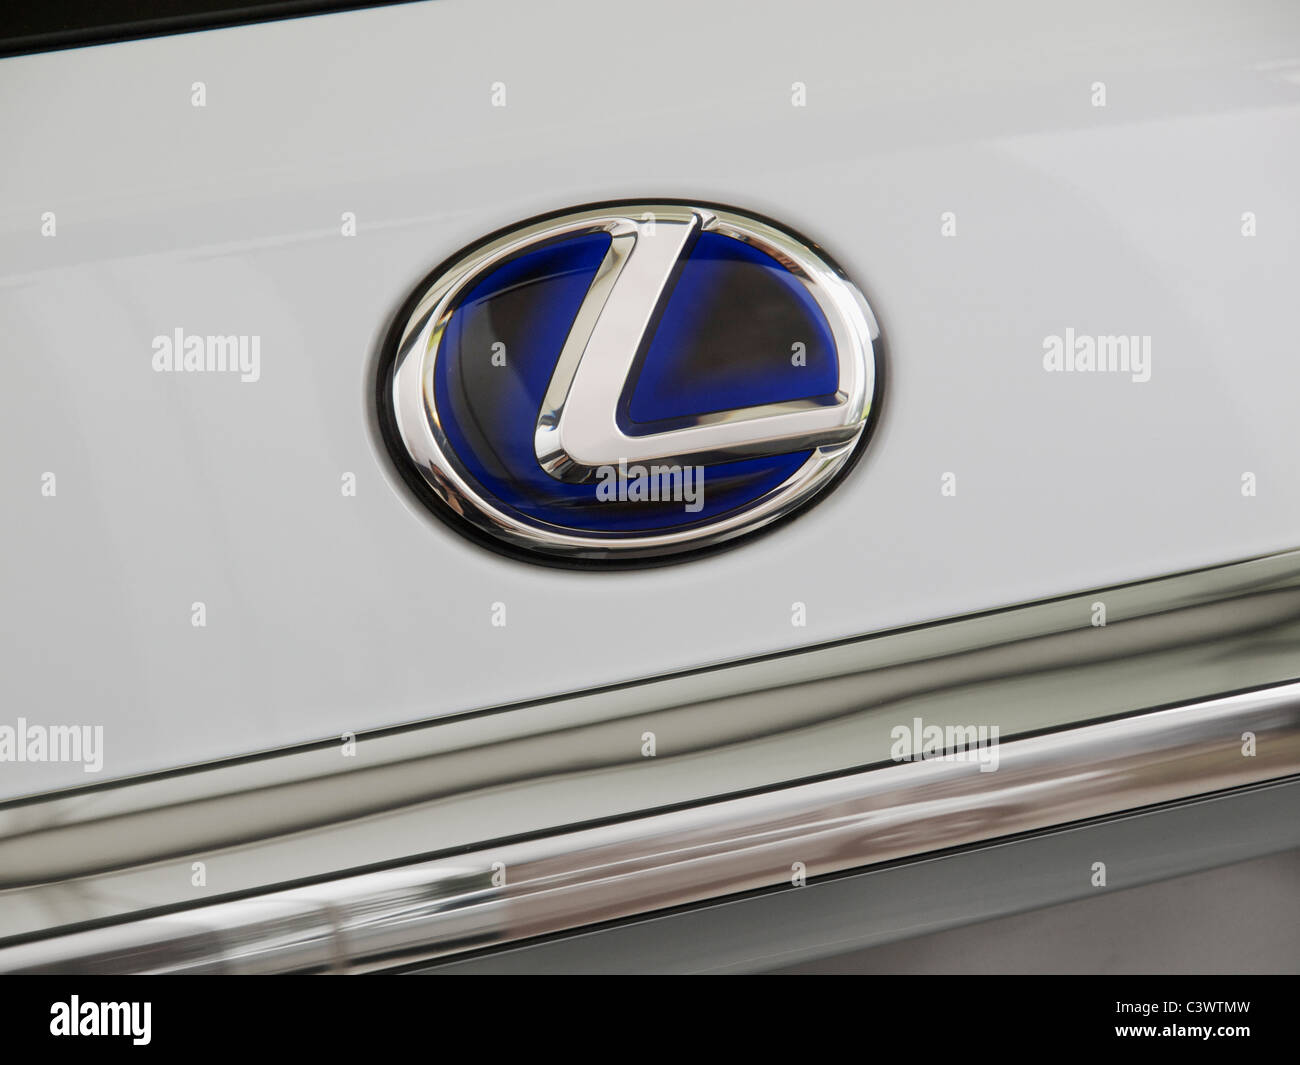 Lexus logo closeup on white luxury automobile Stock Photo